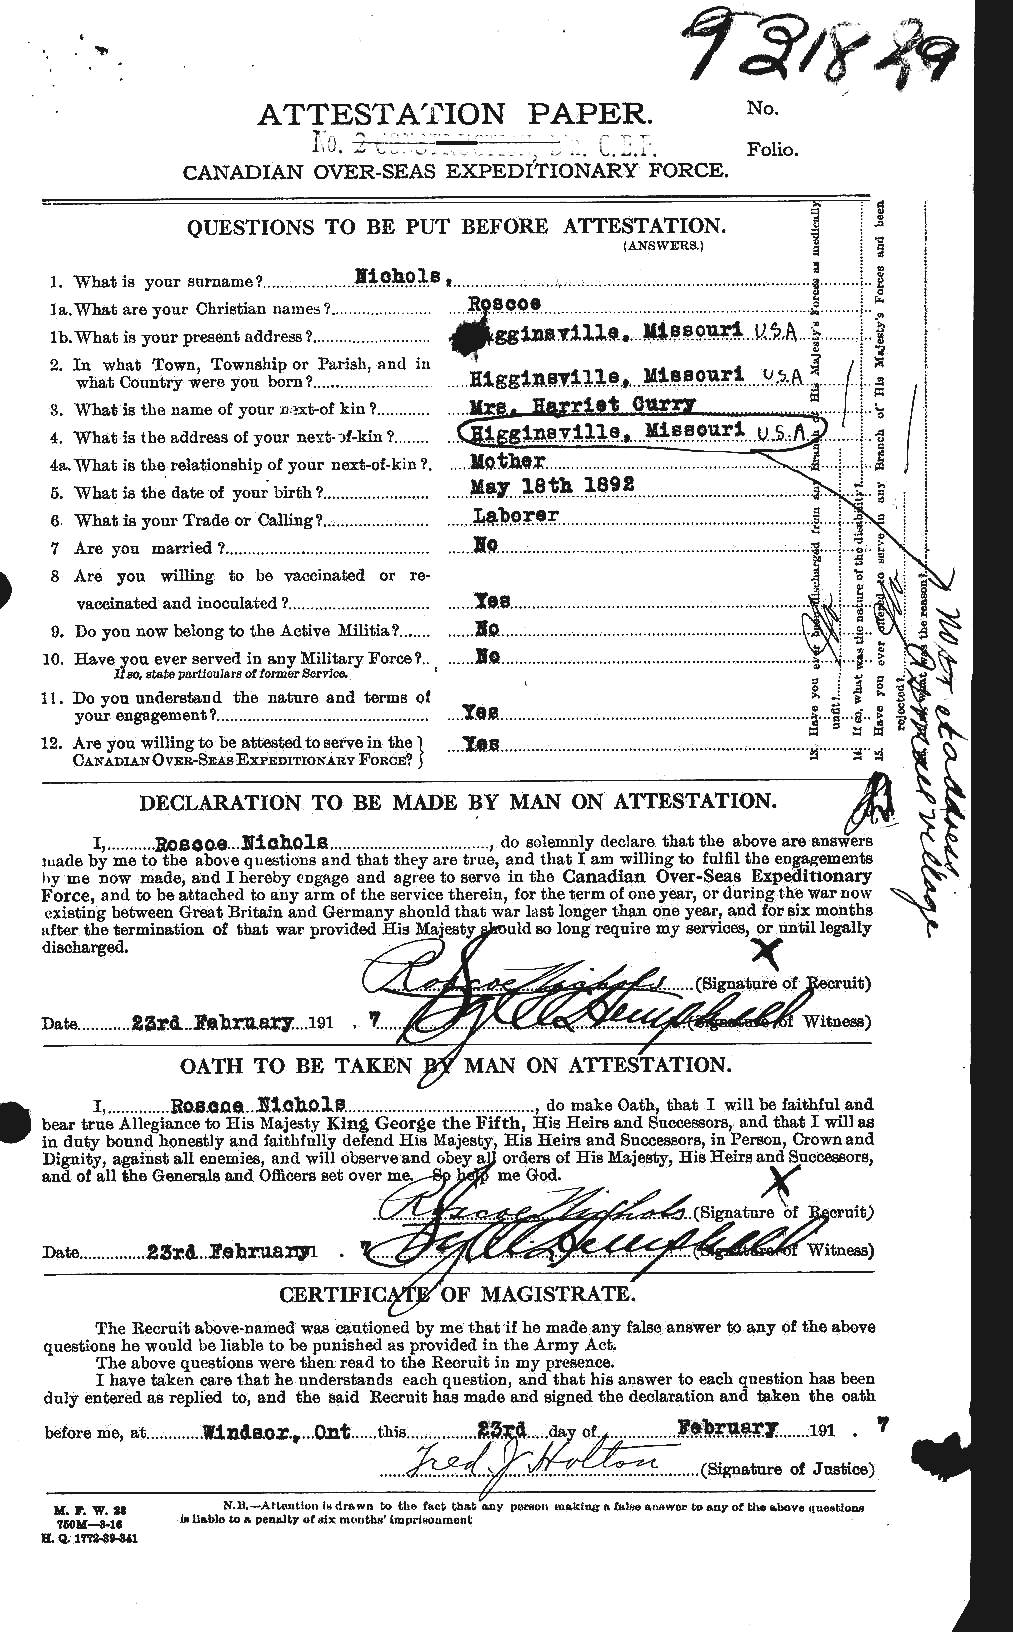 Dossiers du Personnel de la Première Guerre mondiale - CEC 551037a